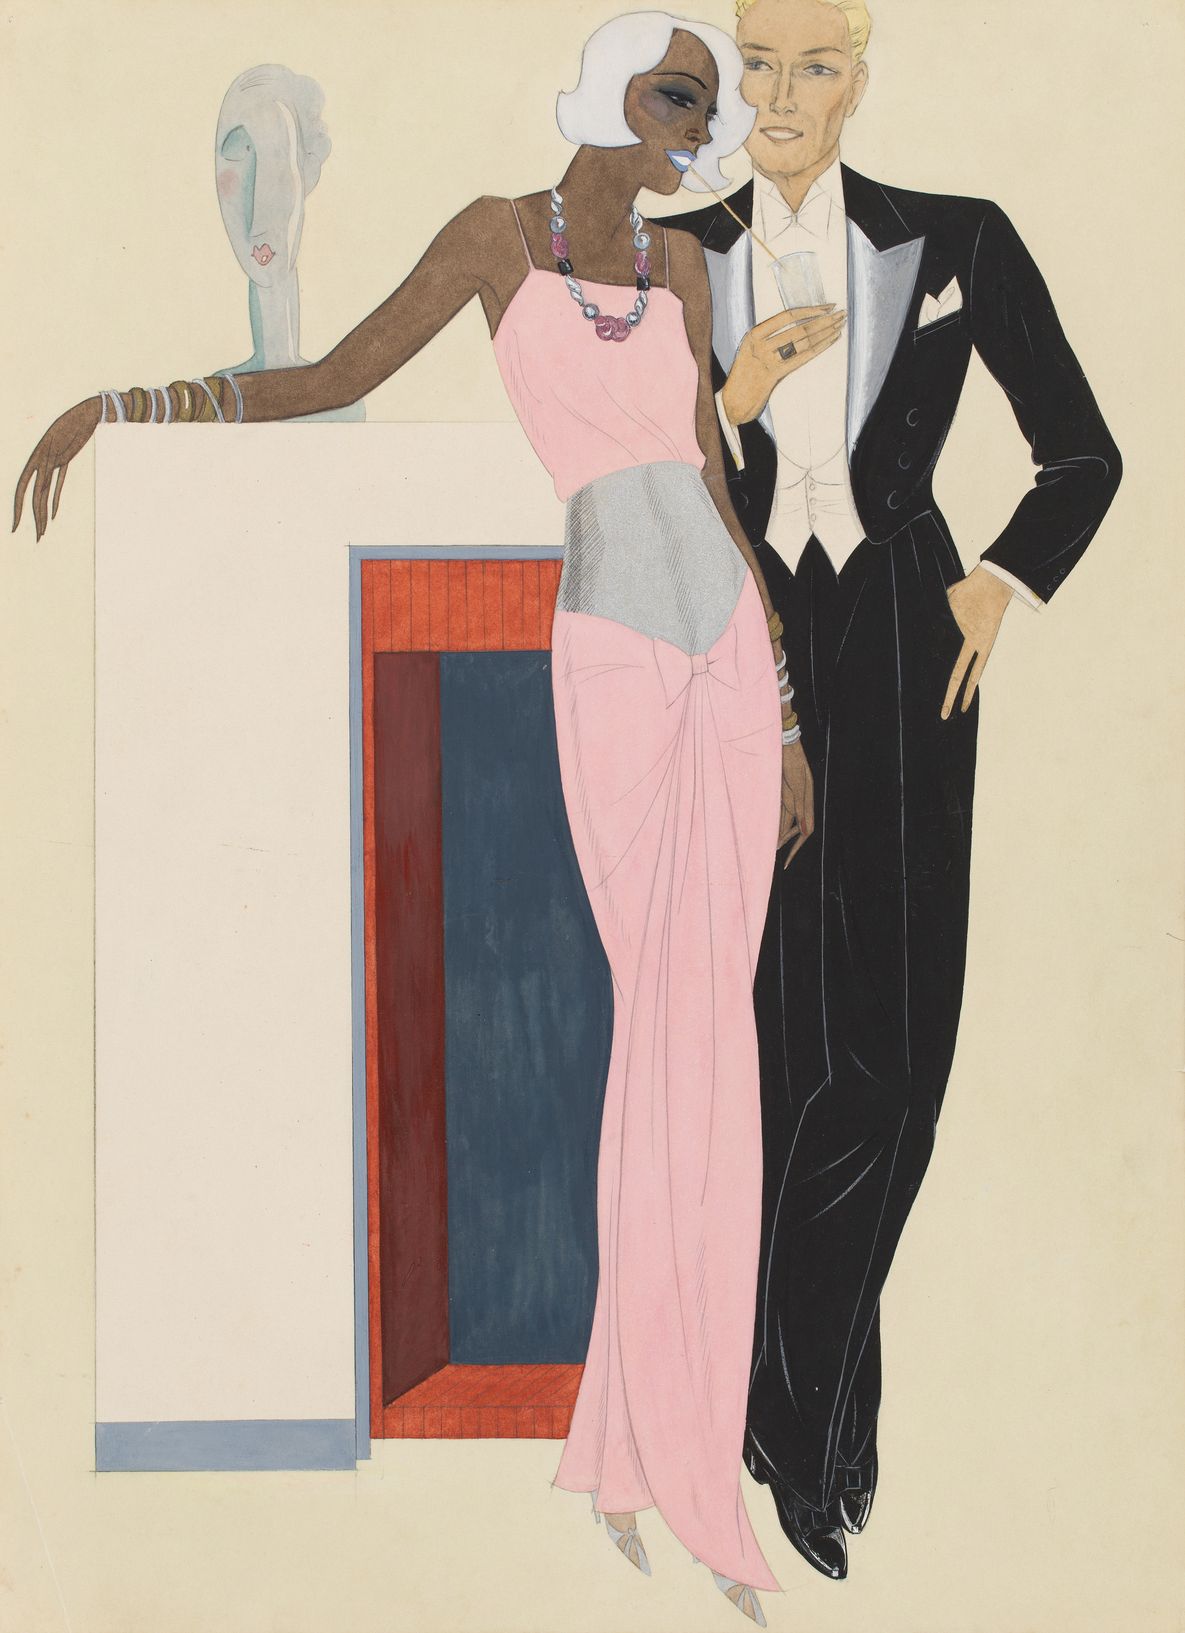 Gerd Hartung, Modezeichnung: Paar in Abendrobe, 1932